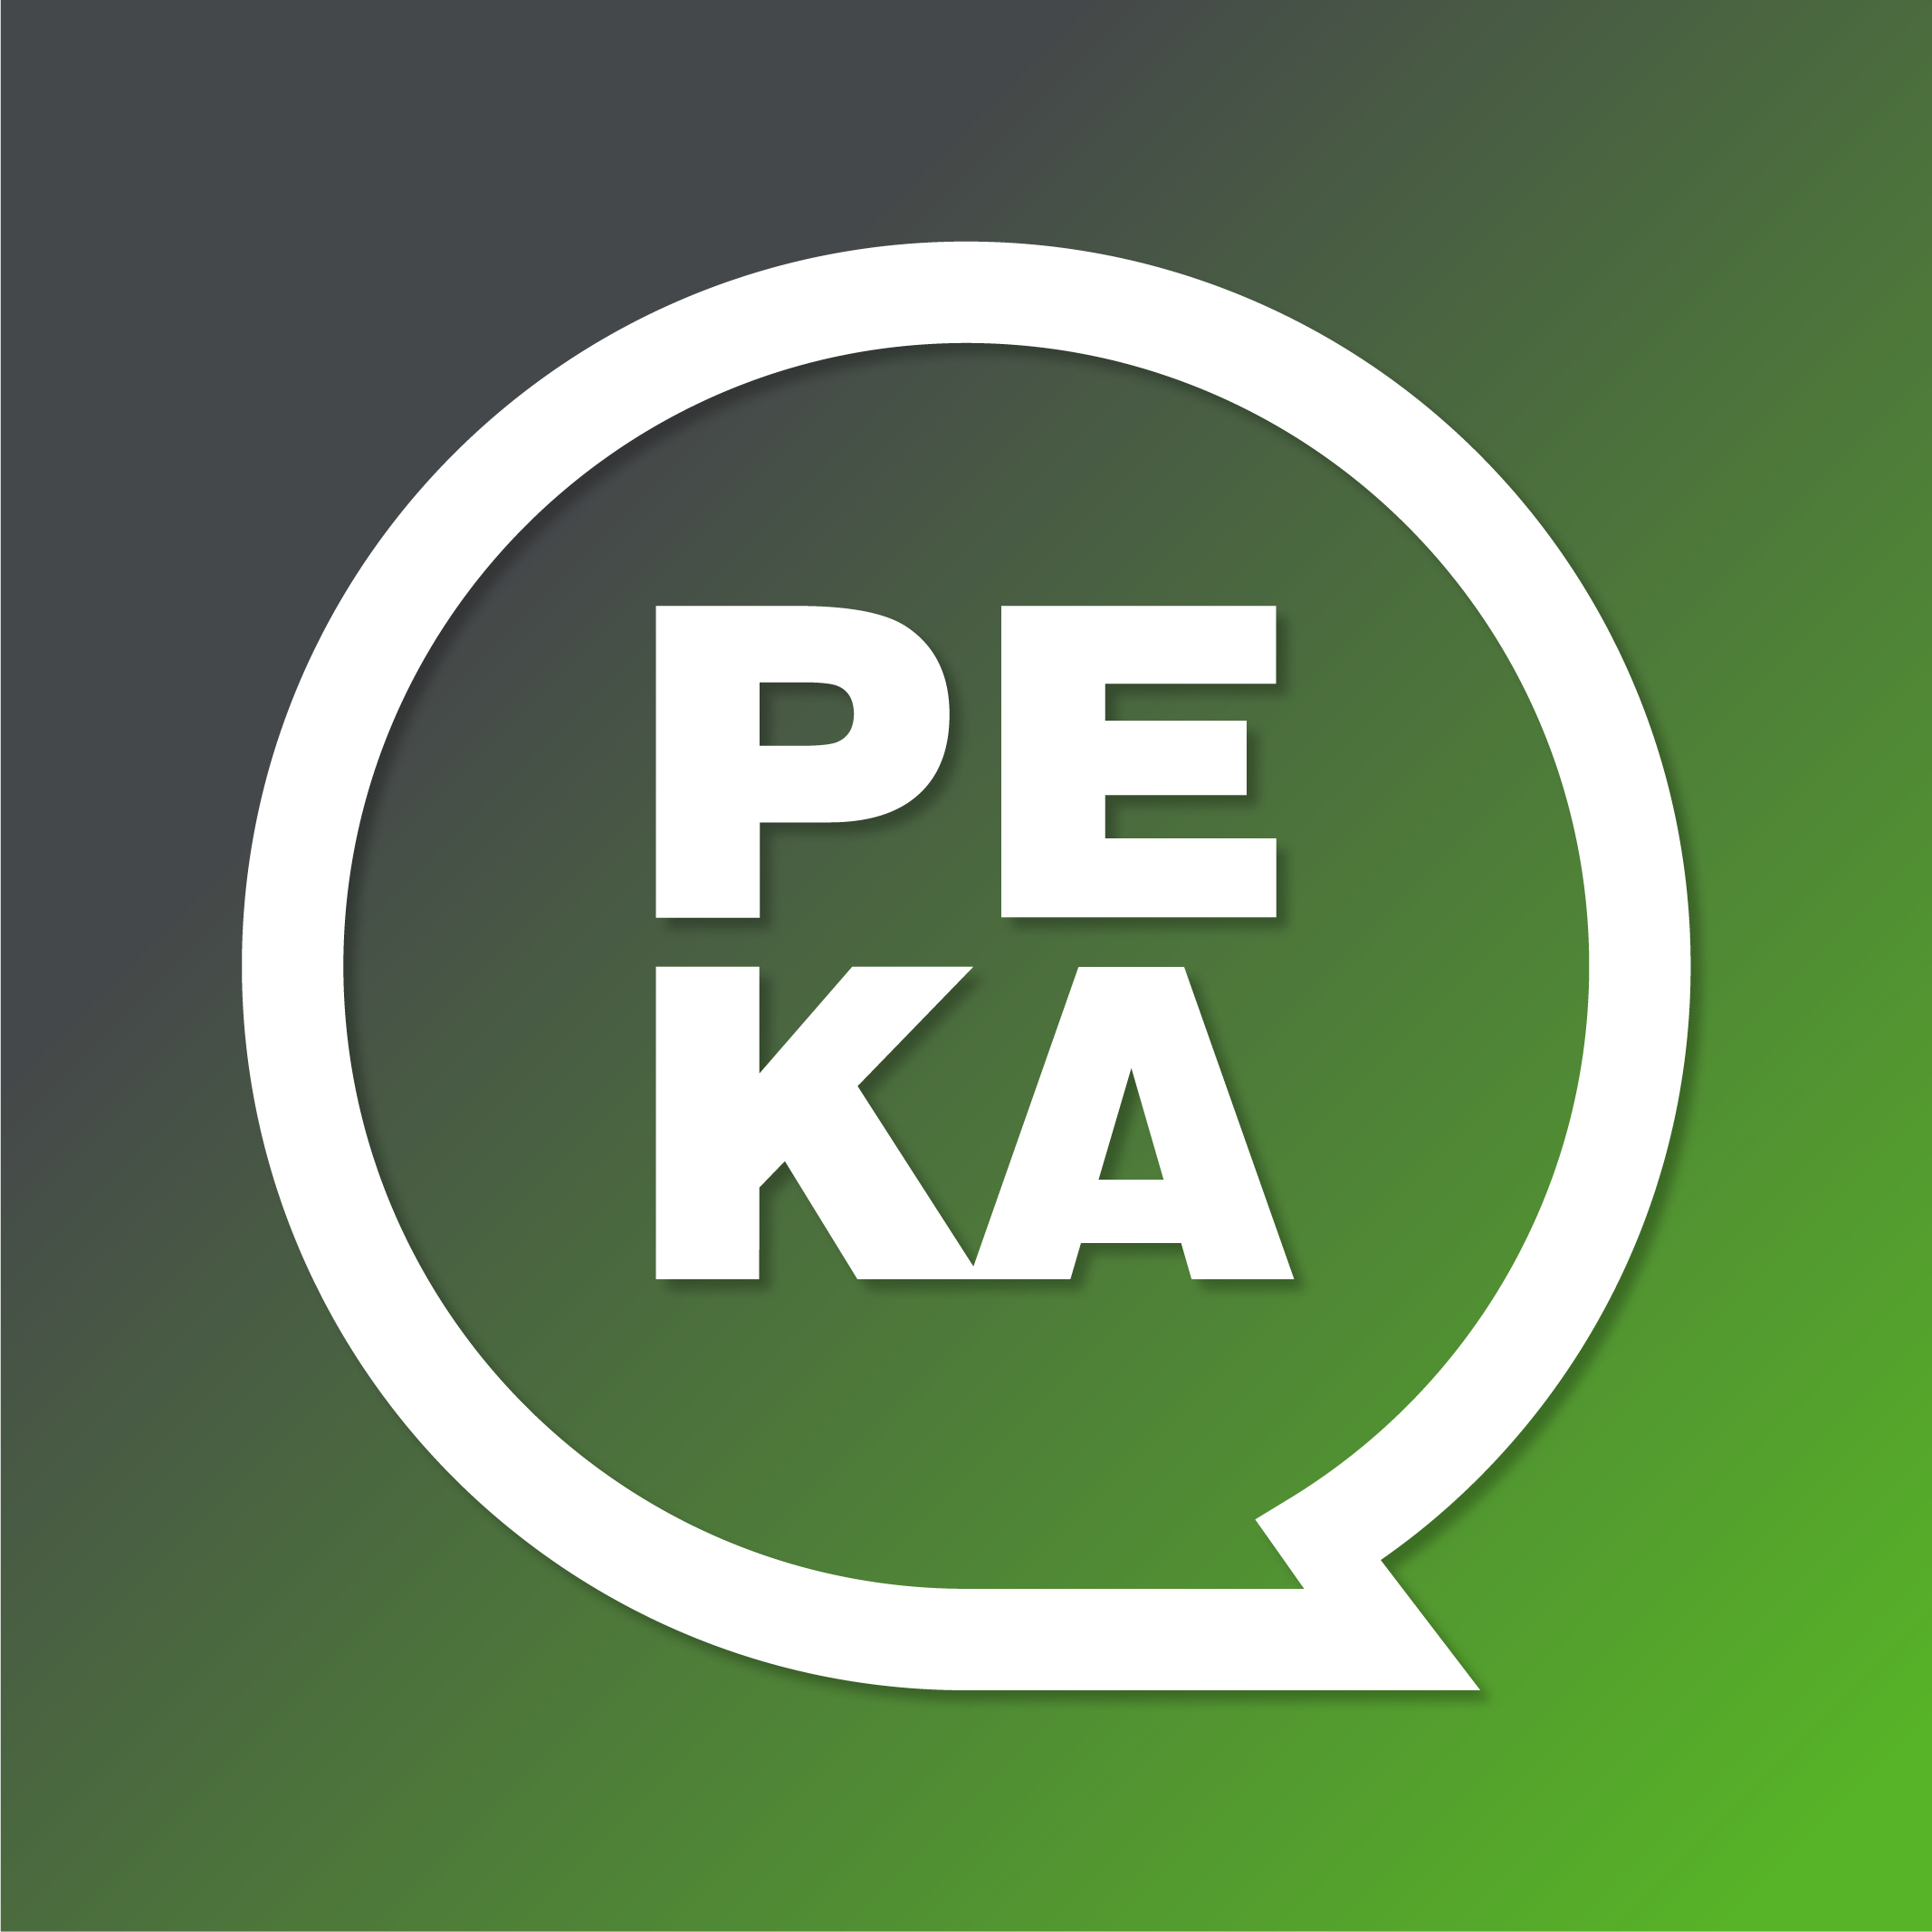 Aplikacja PEKA – wygodny sposób na bilety okresowe ZTM - AKTUALIZACJA 20.01.2023